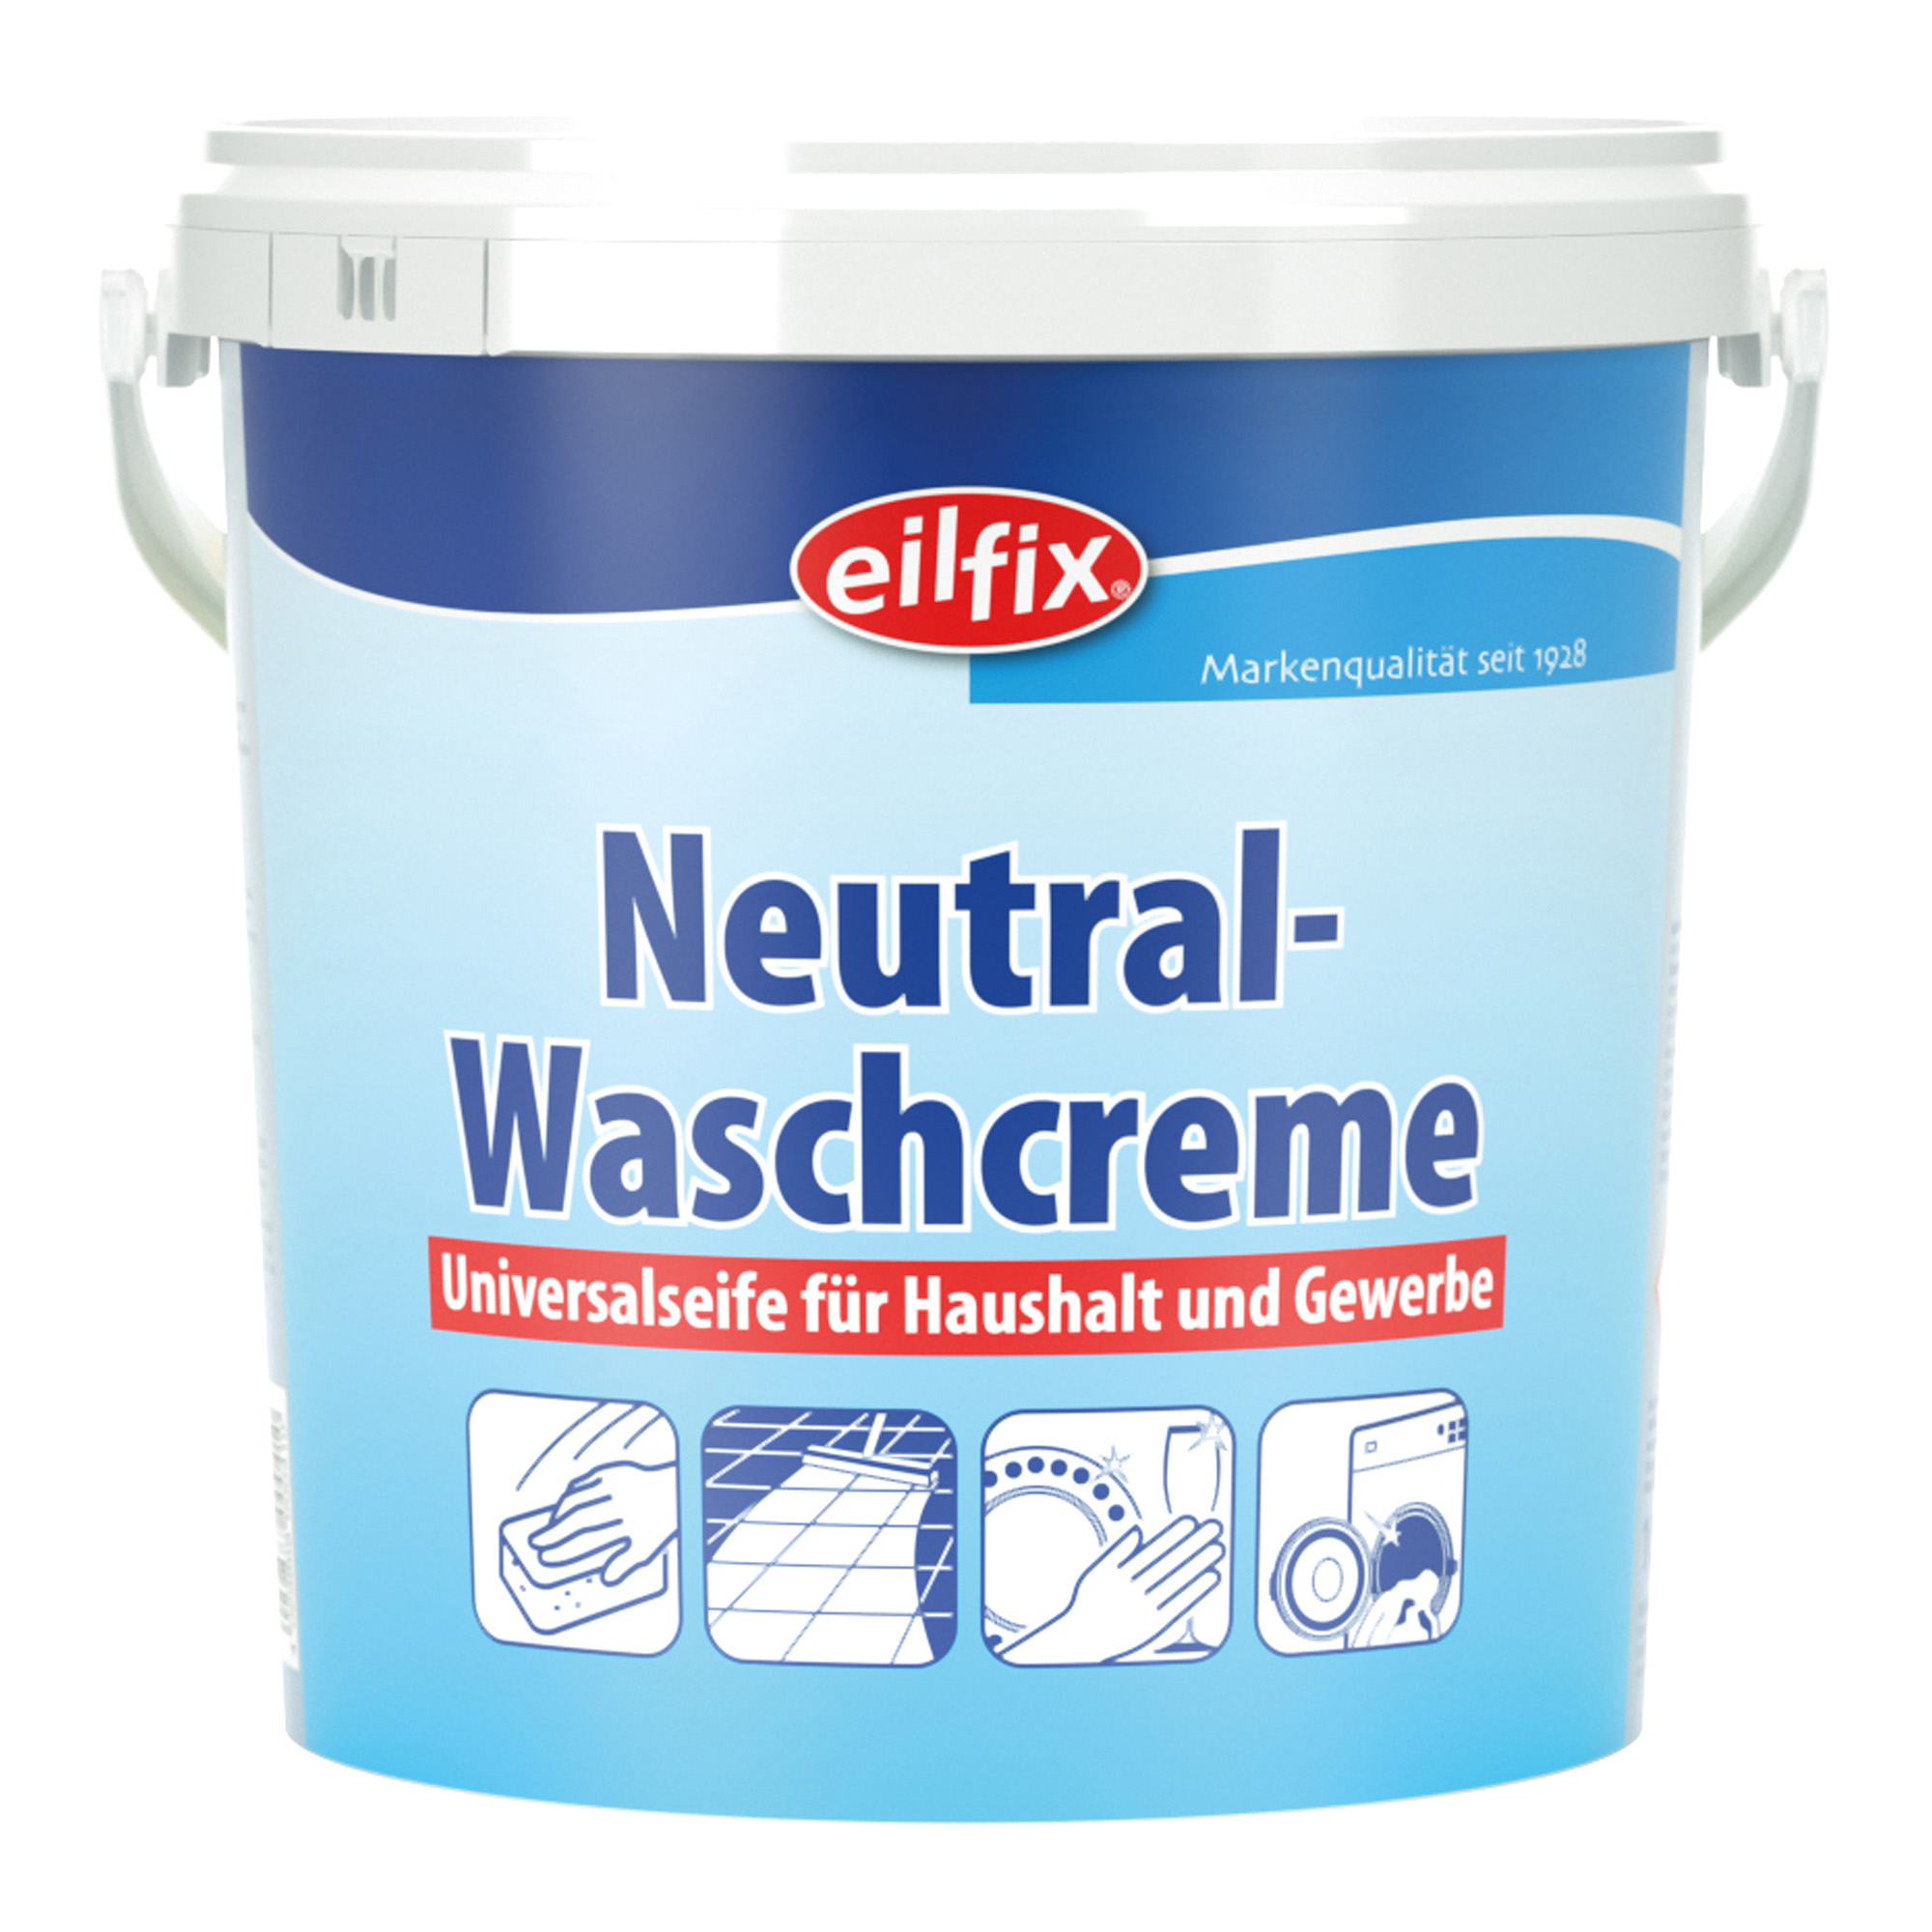 Eilfix Neutral-Waschcreme 10 Liter Eimer 100024-010-000_1